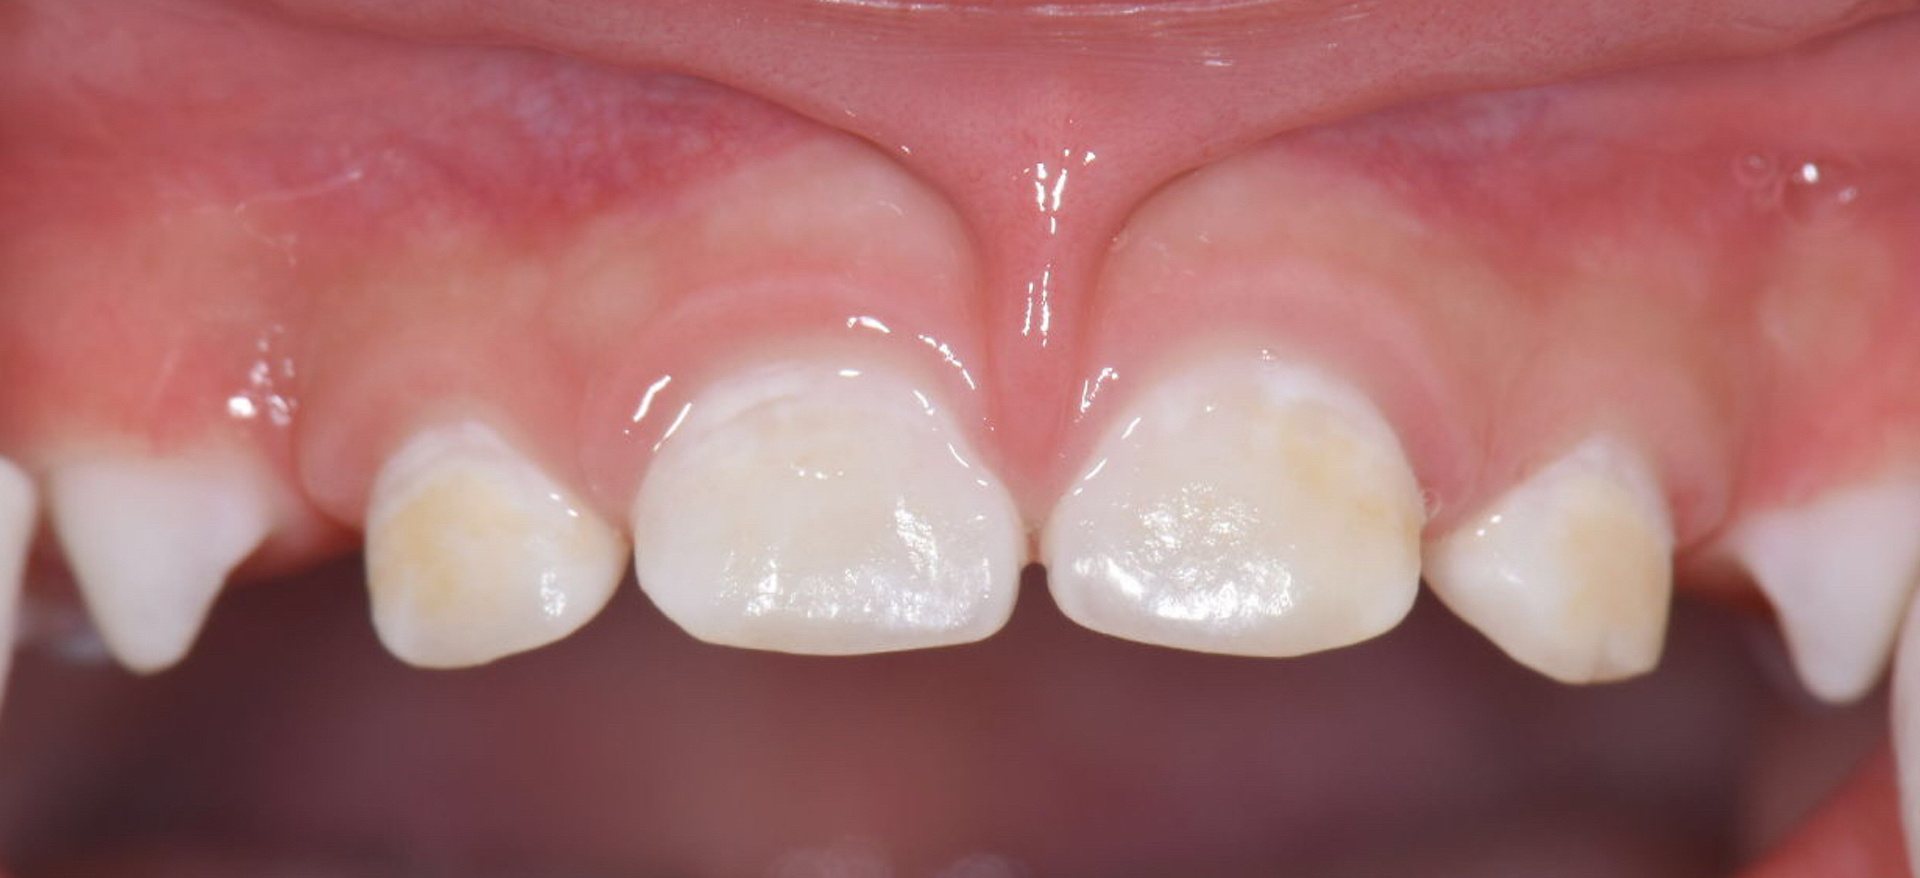 子供の歯にチョークのような白い部分があり歯磨きしても取れません。これは何でしょうか？